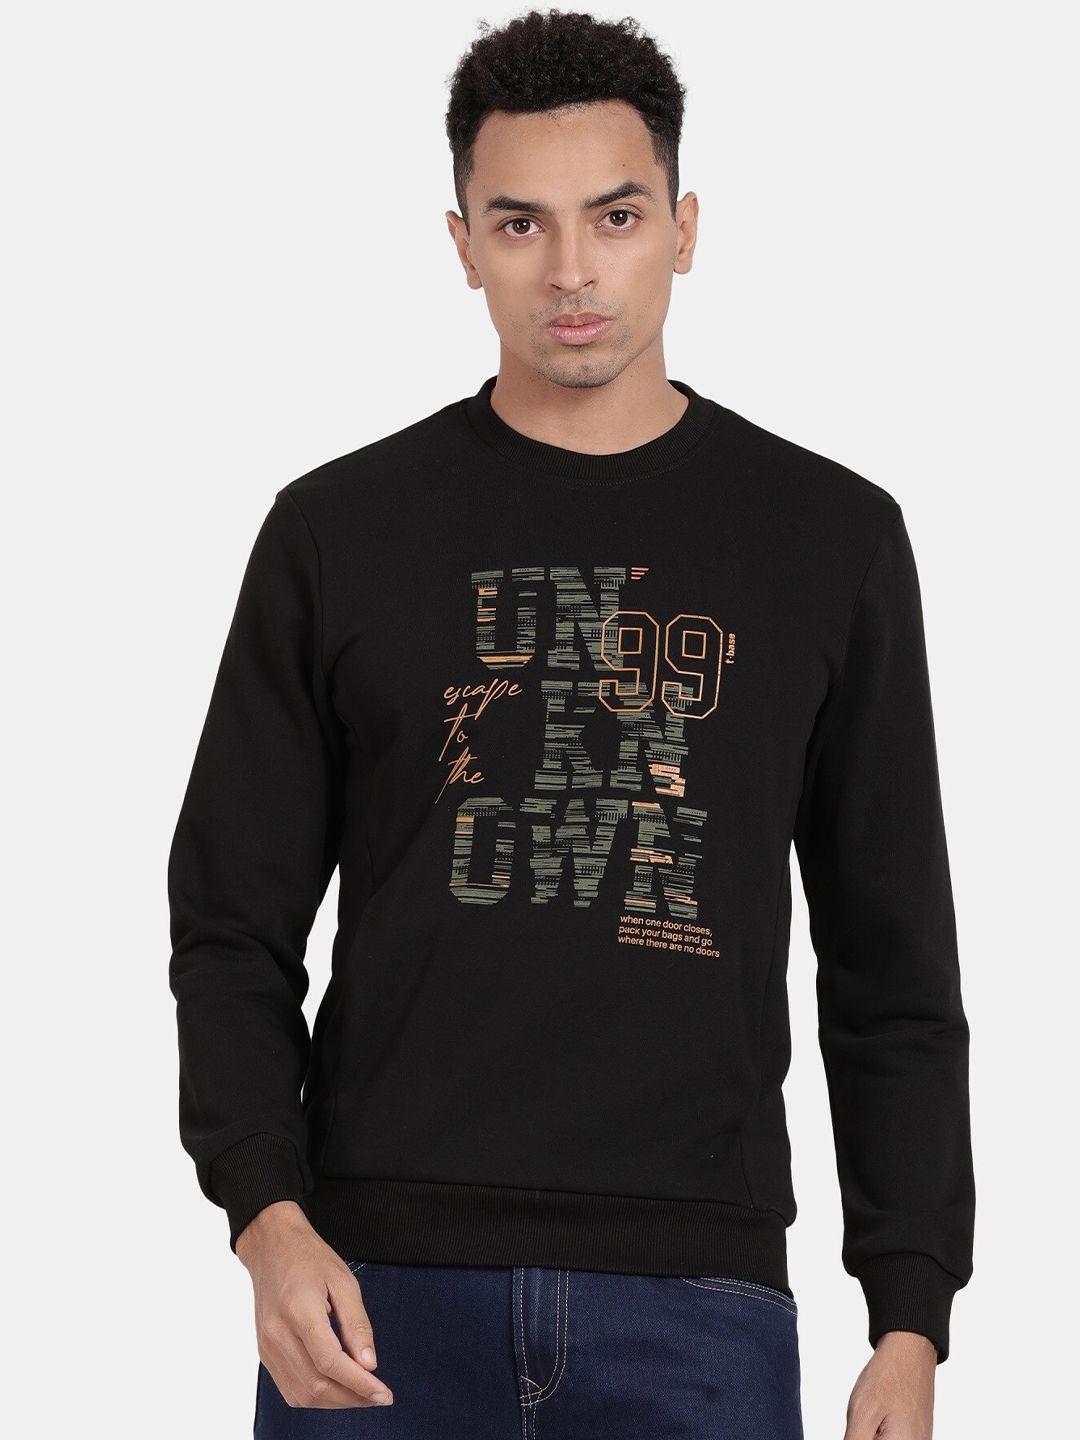 t-base typography printed sweatshirt